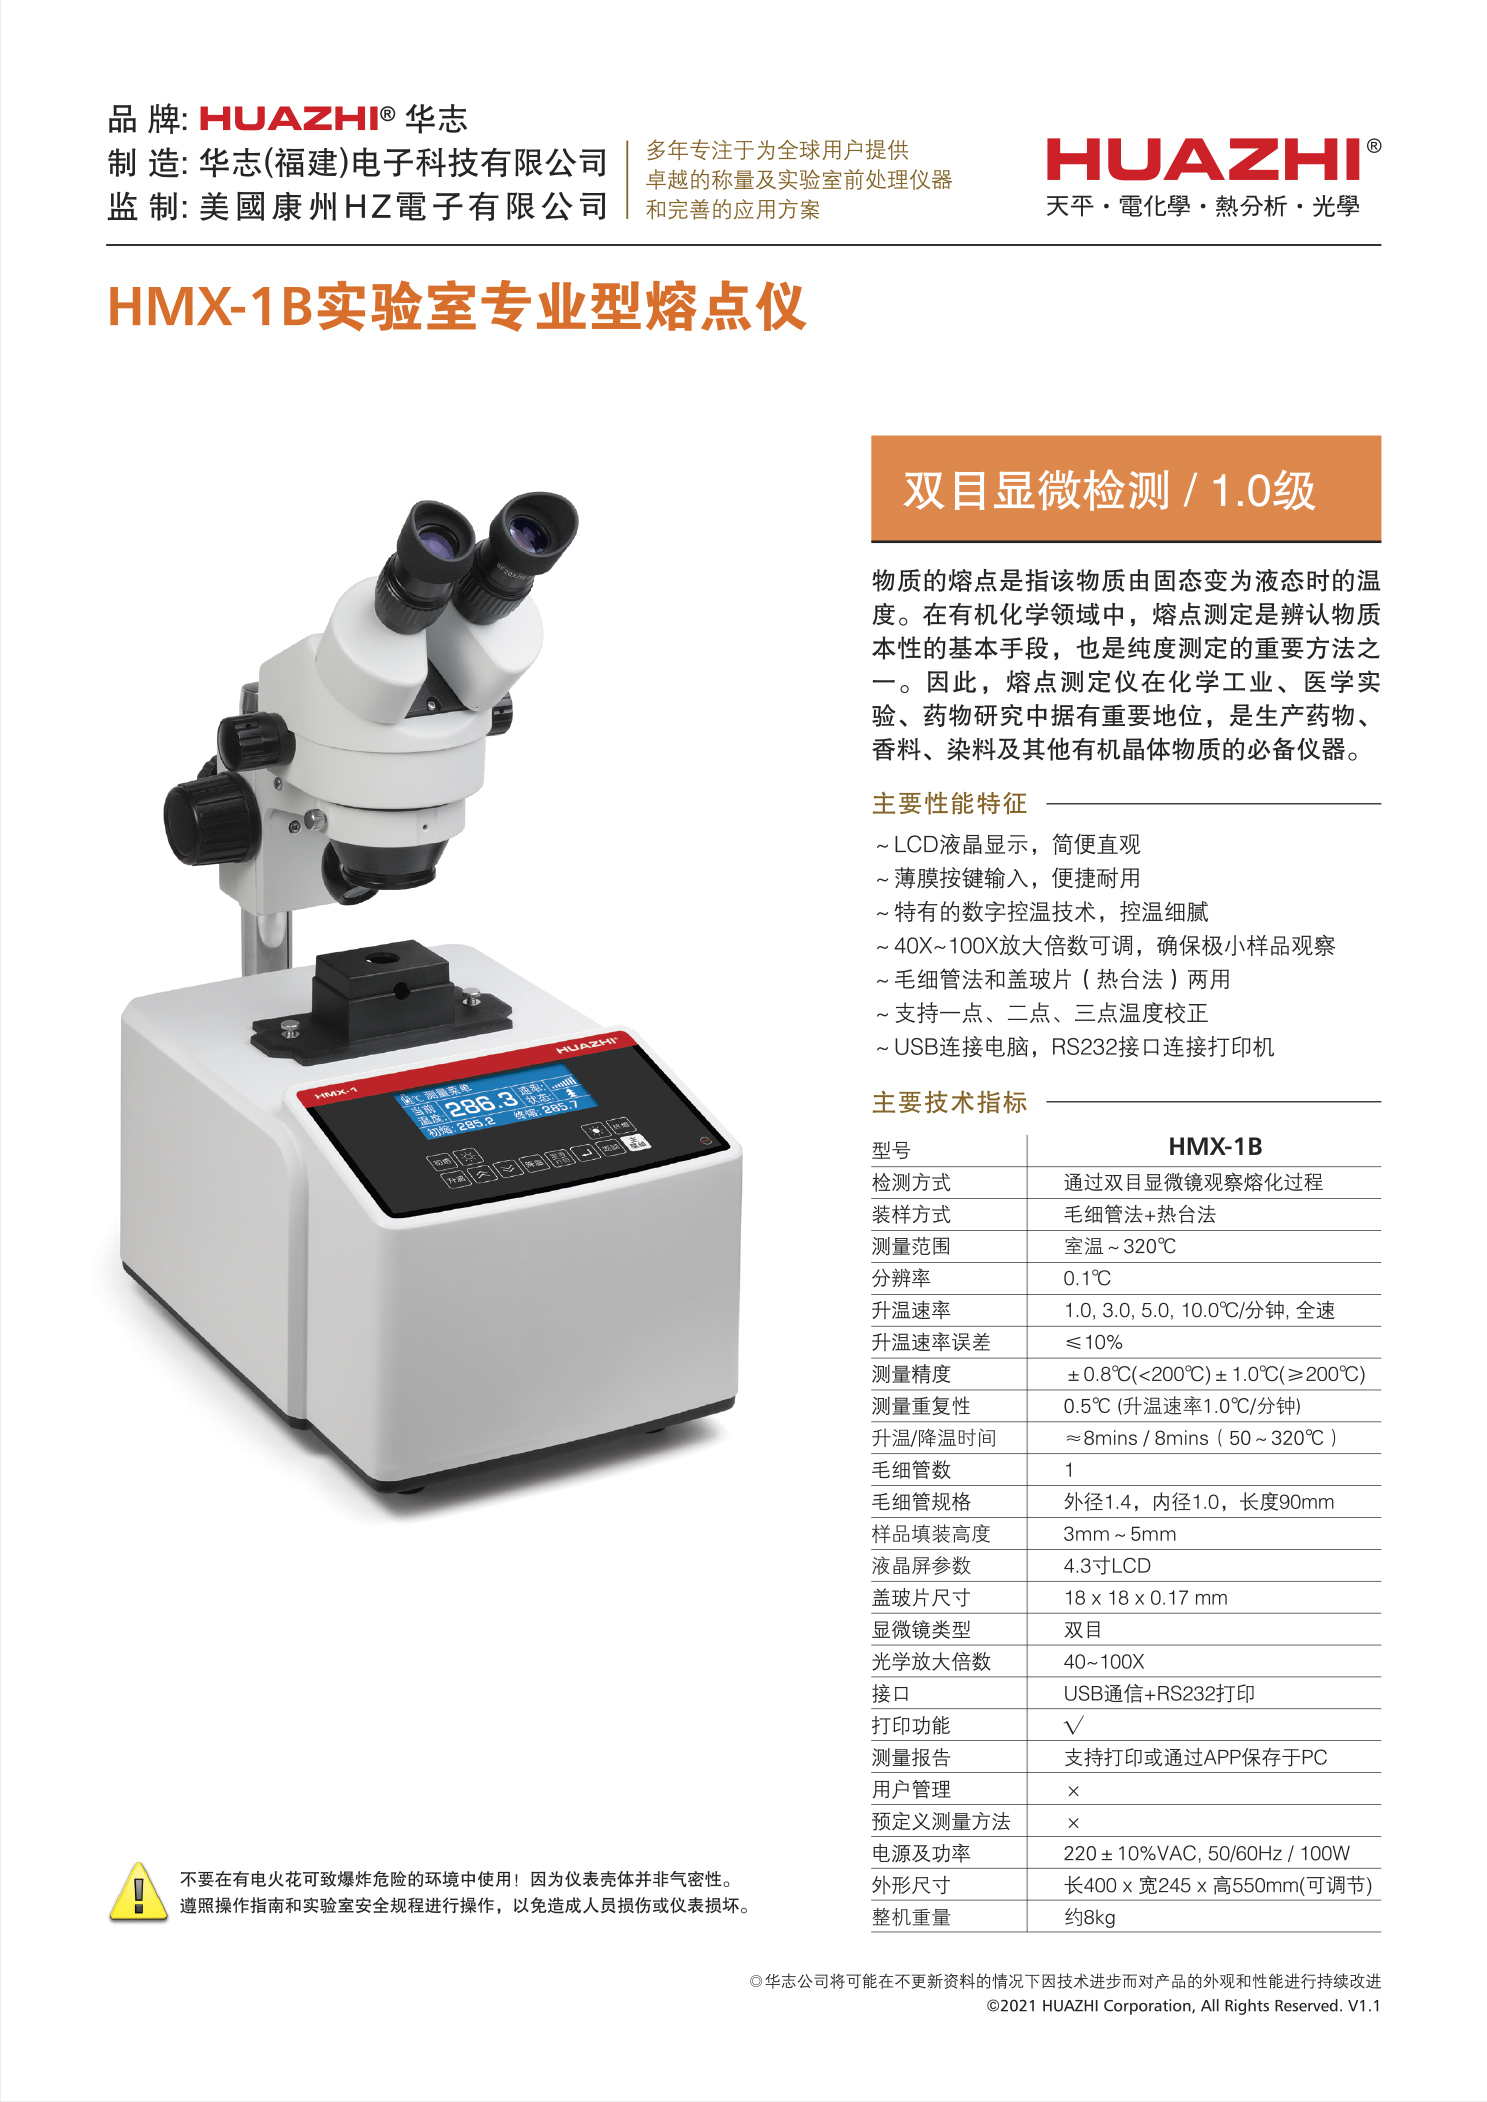 熔点仪HMX-1B单机详情(中文v1.1).jpg